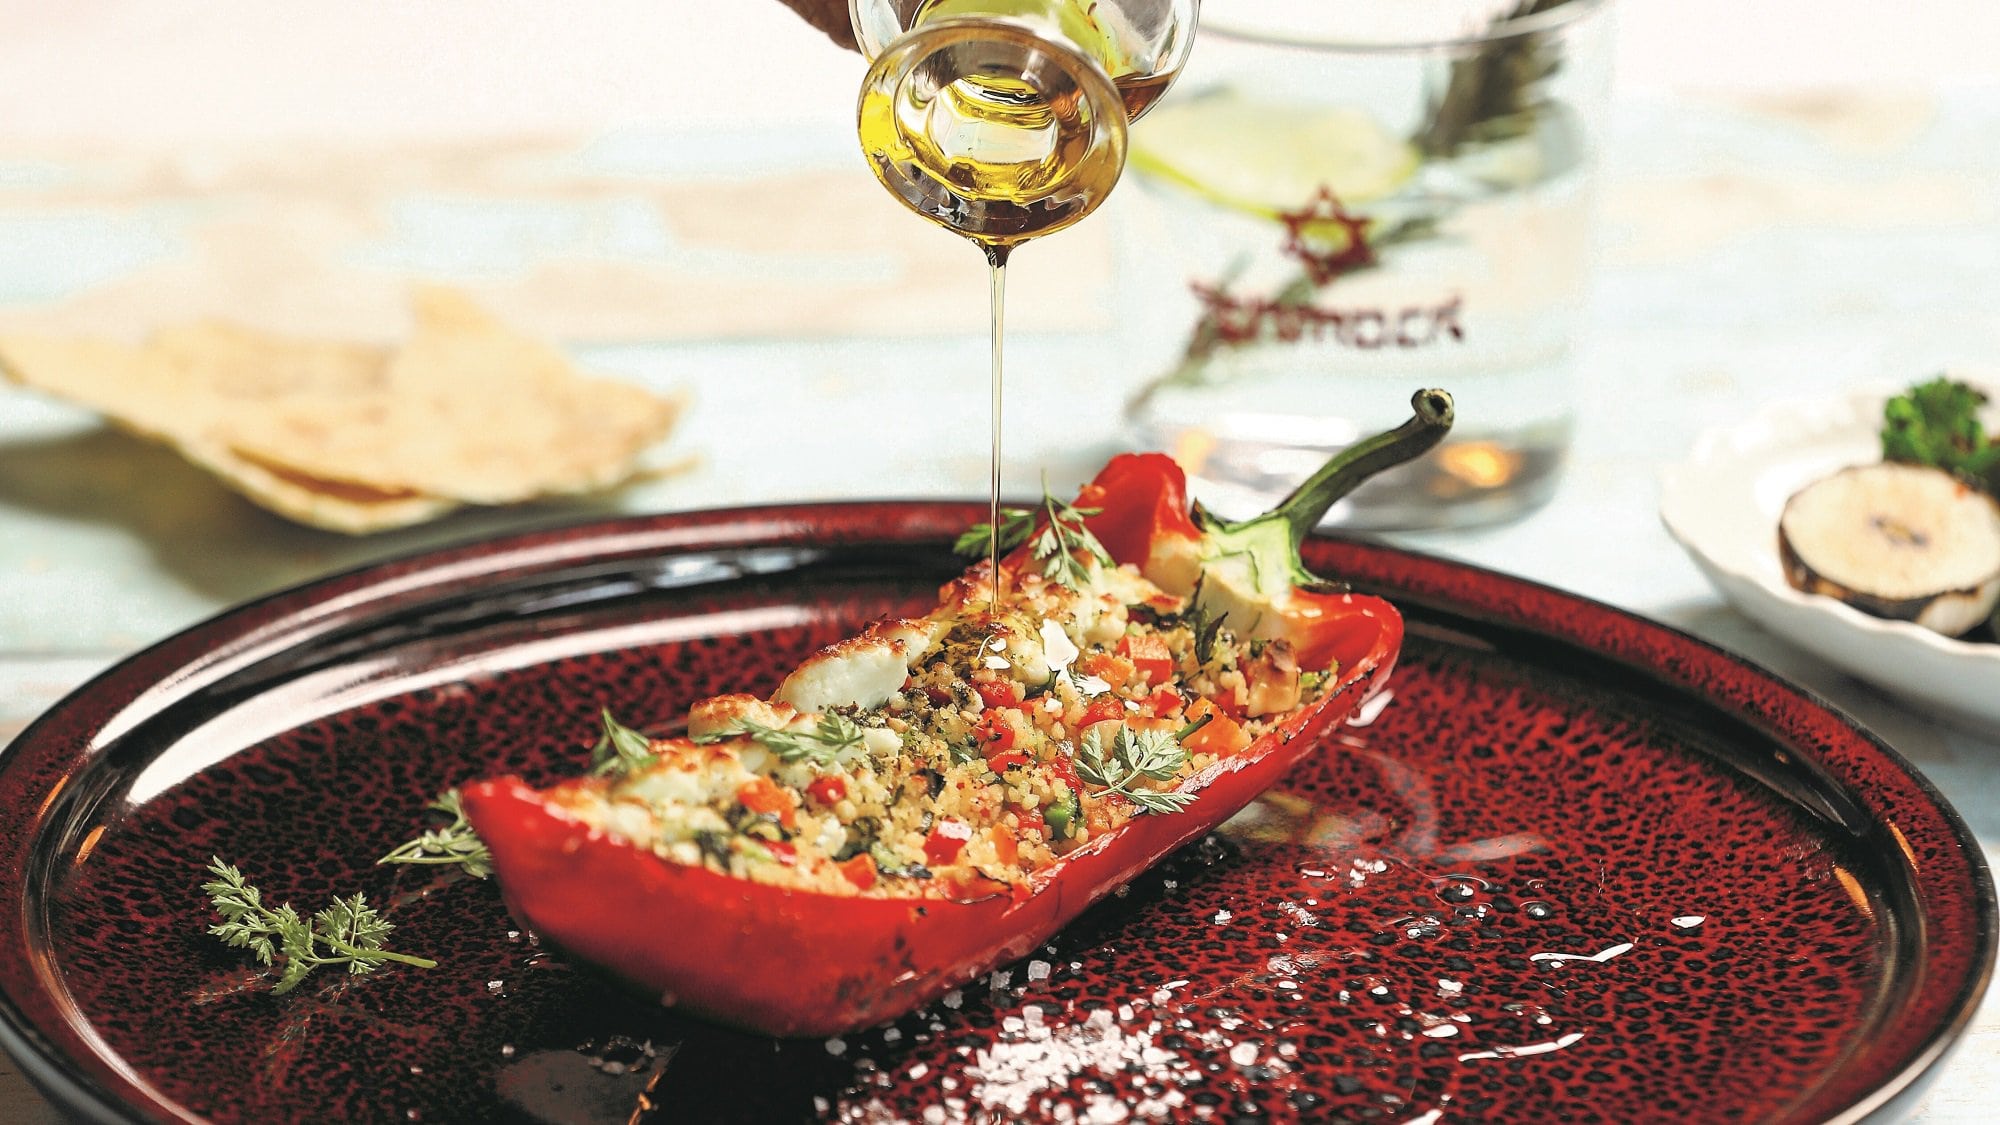 Eine halbe Spitzpaprika mit Gemüse-Couscous-Füllung auf einem Teller, darüber wird etwas Öl gegossen.